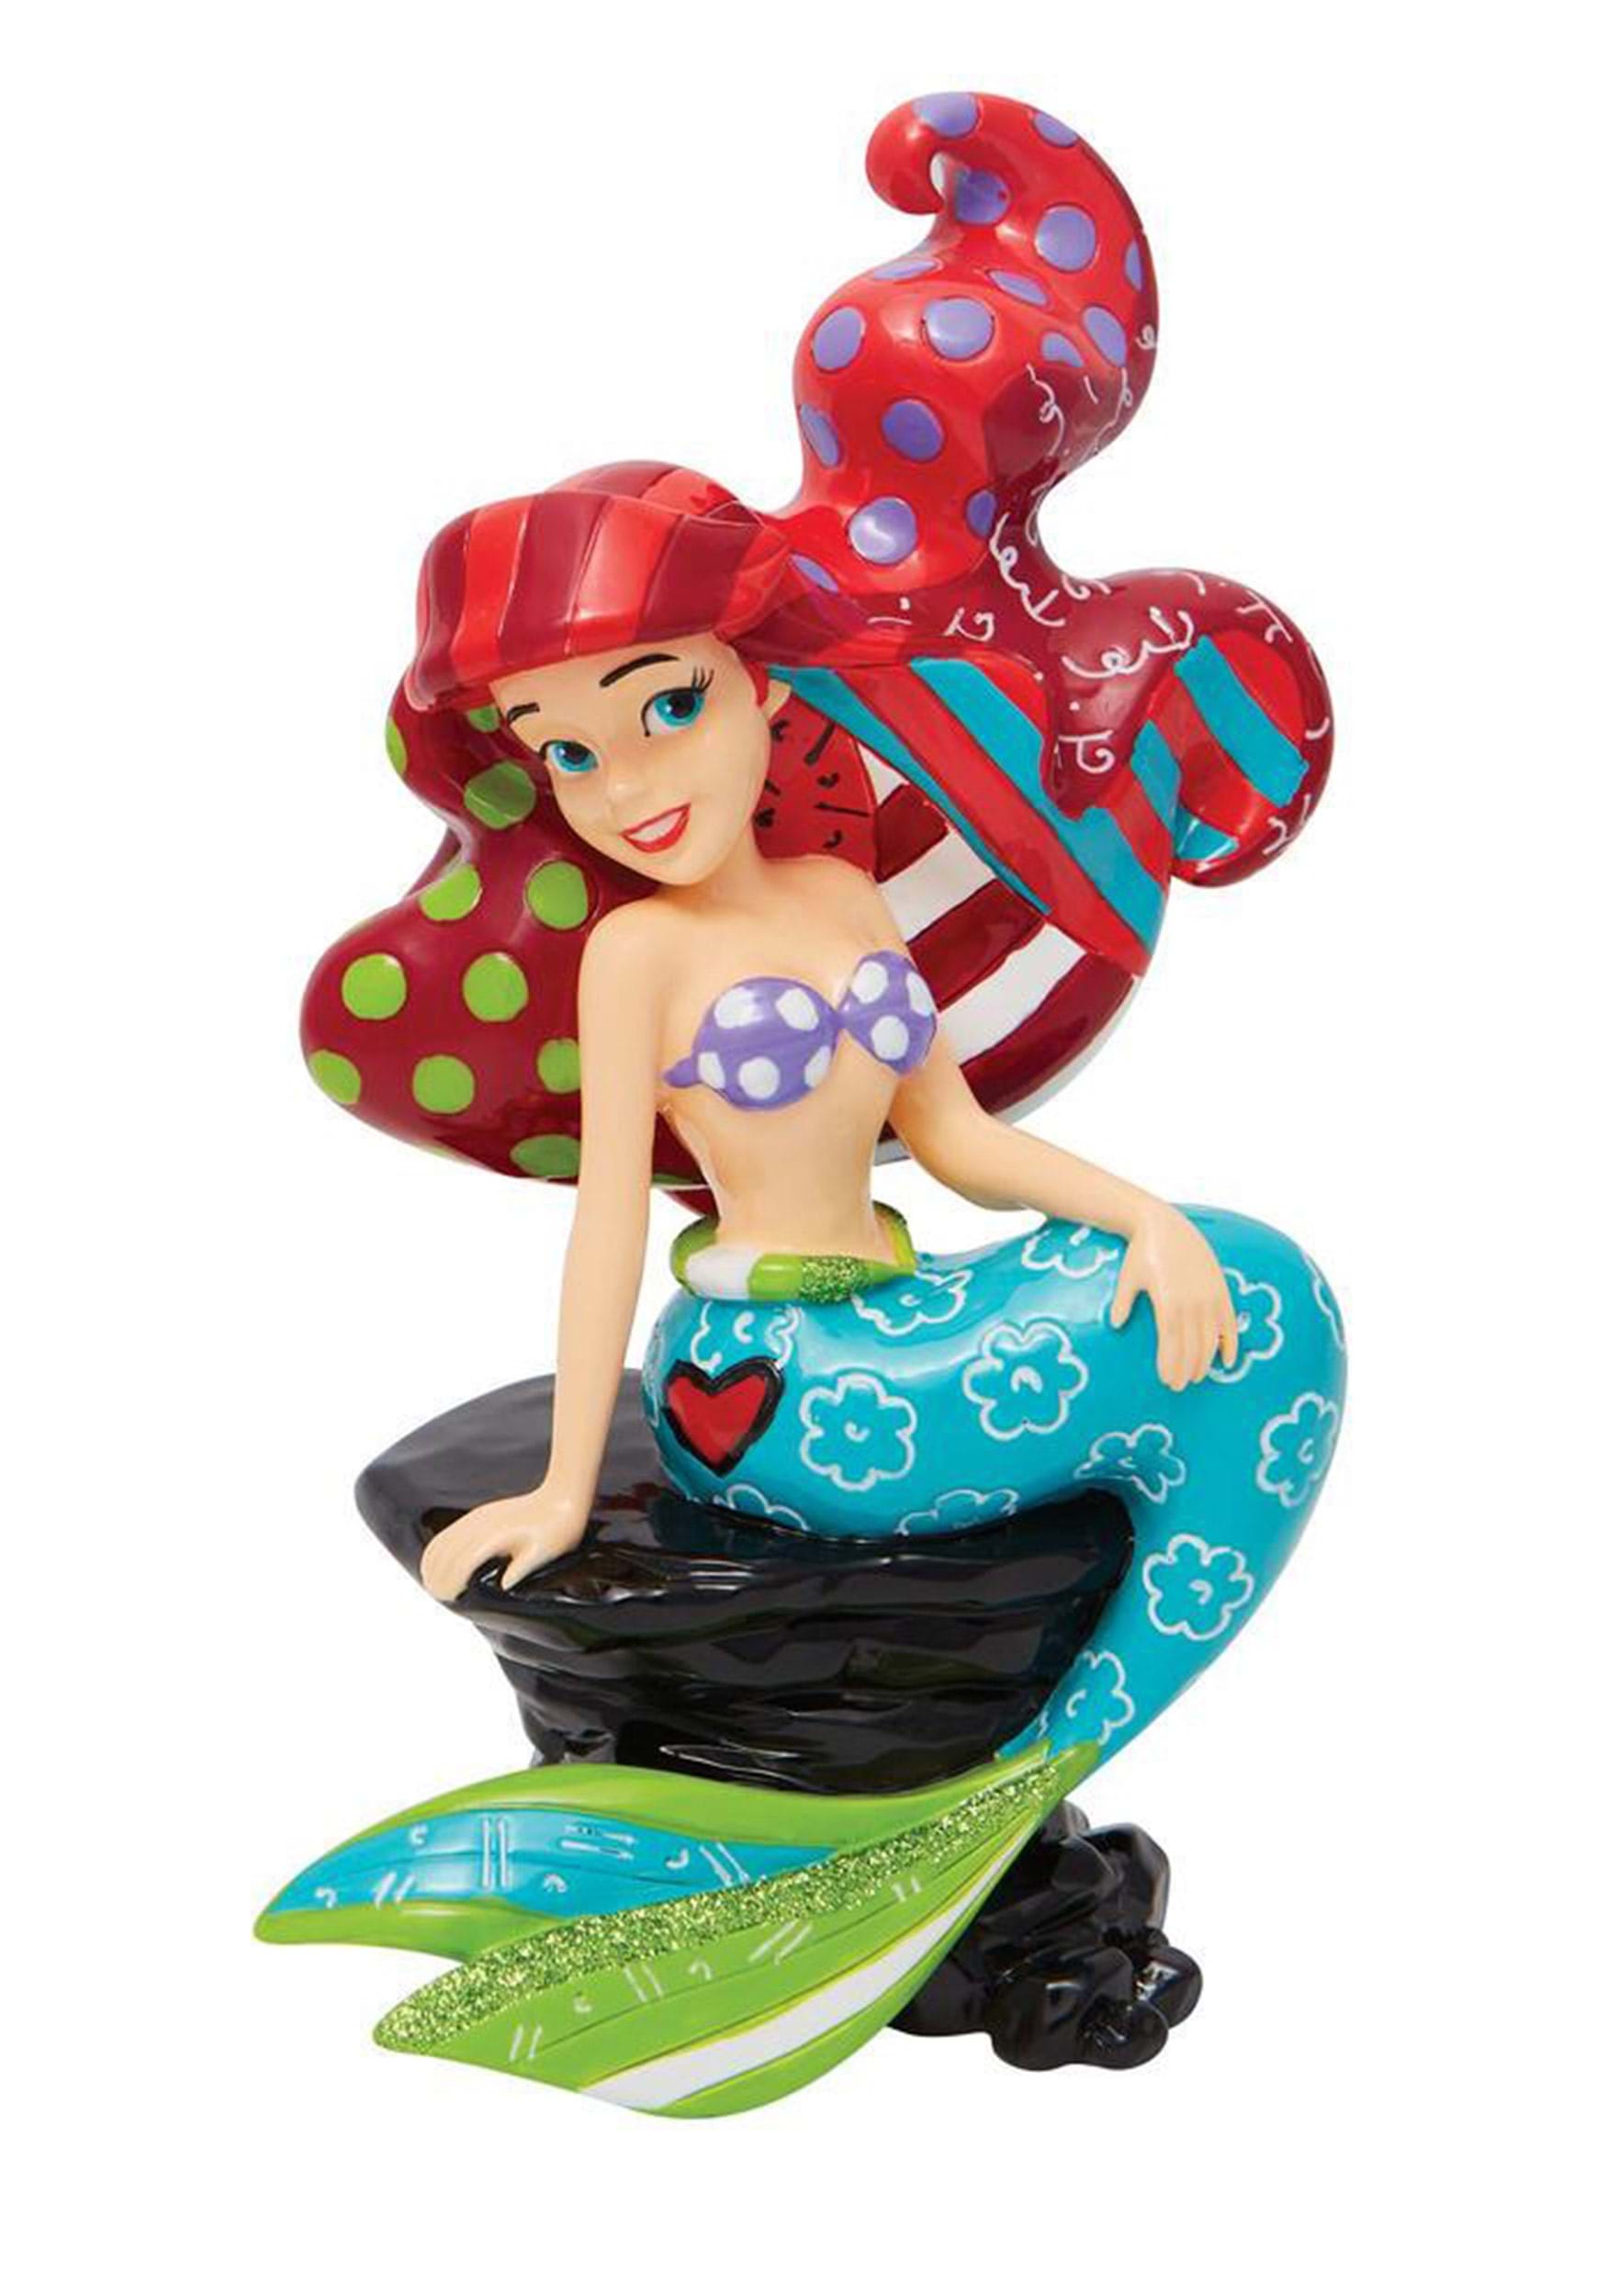 Disney Ariel on Rock Britto Statue